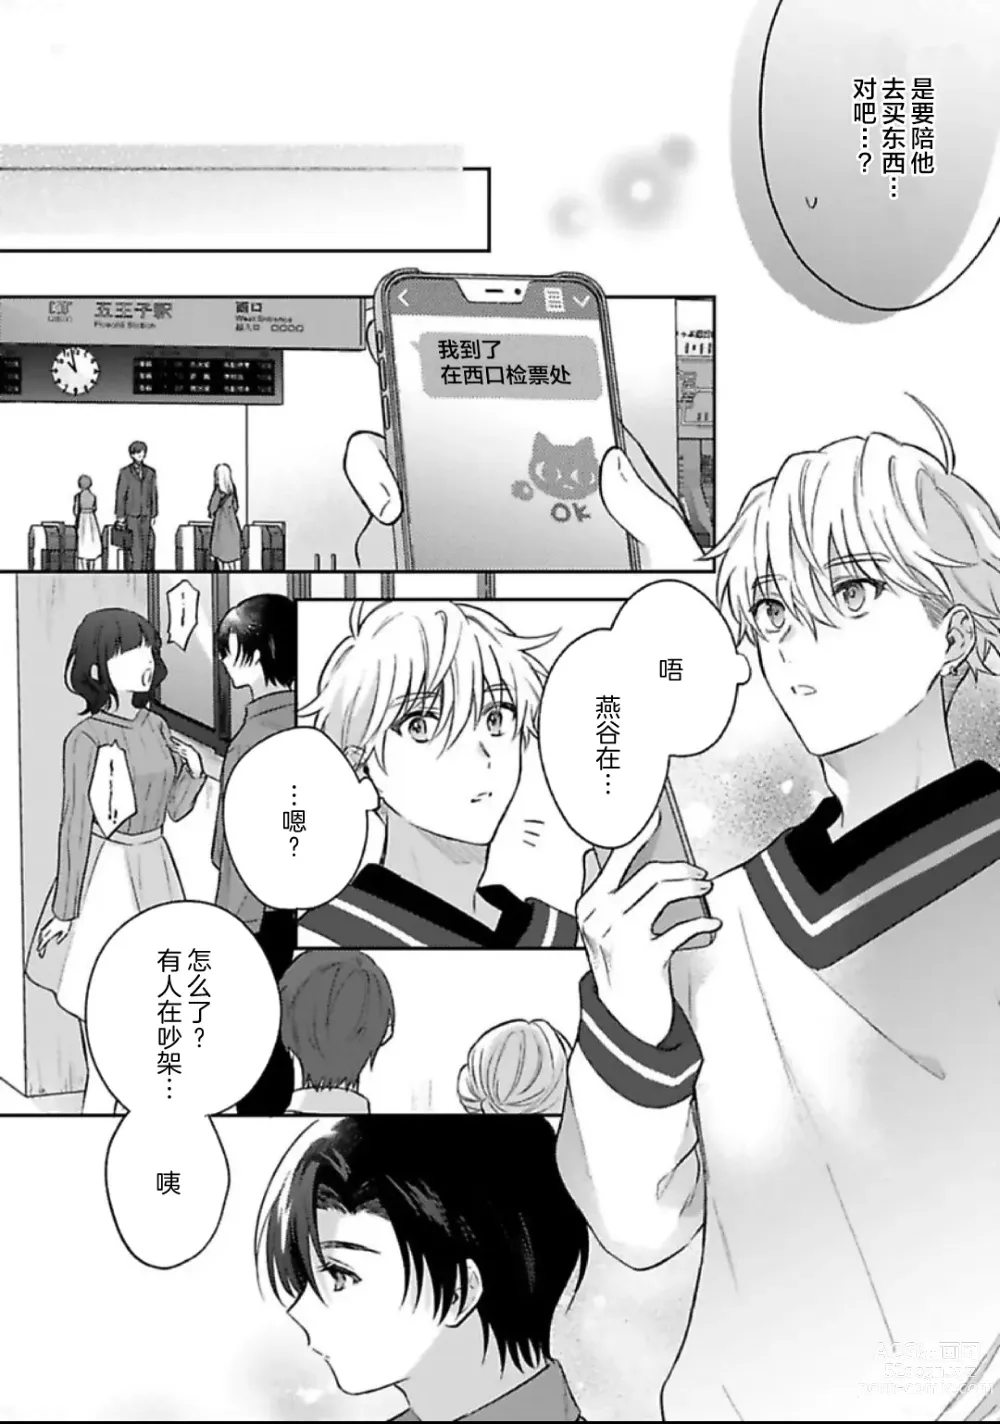 Page 23 of manga Sagashimonoha Kimidesuka｜你是我的所寻之物吗